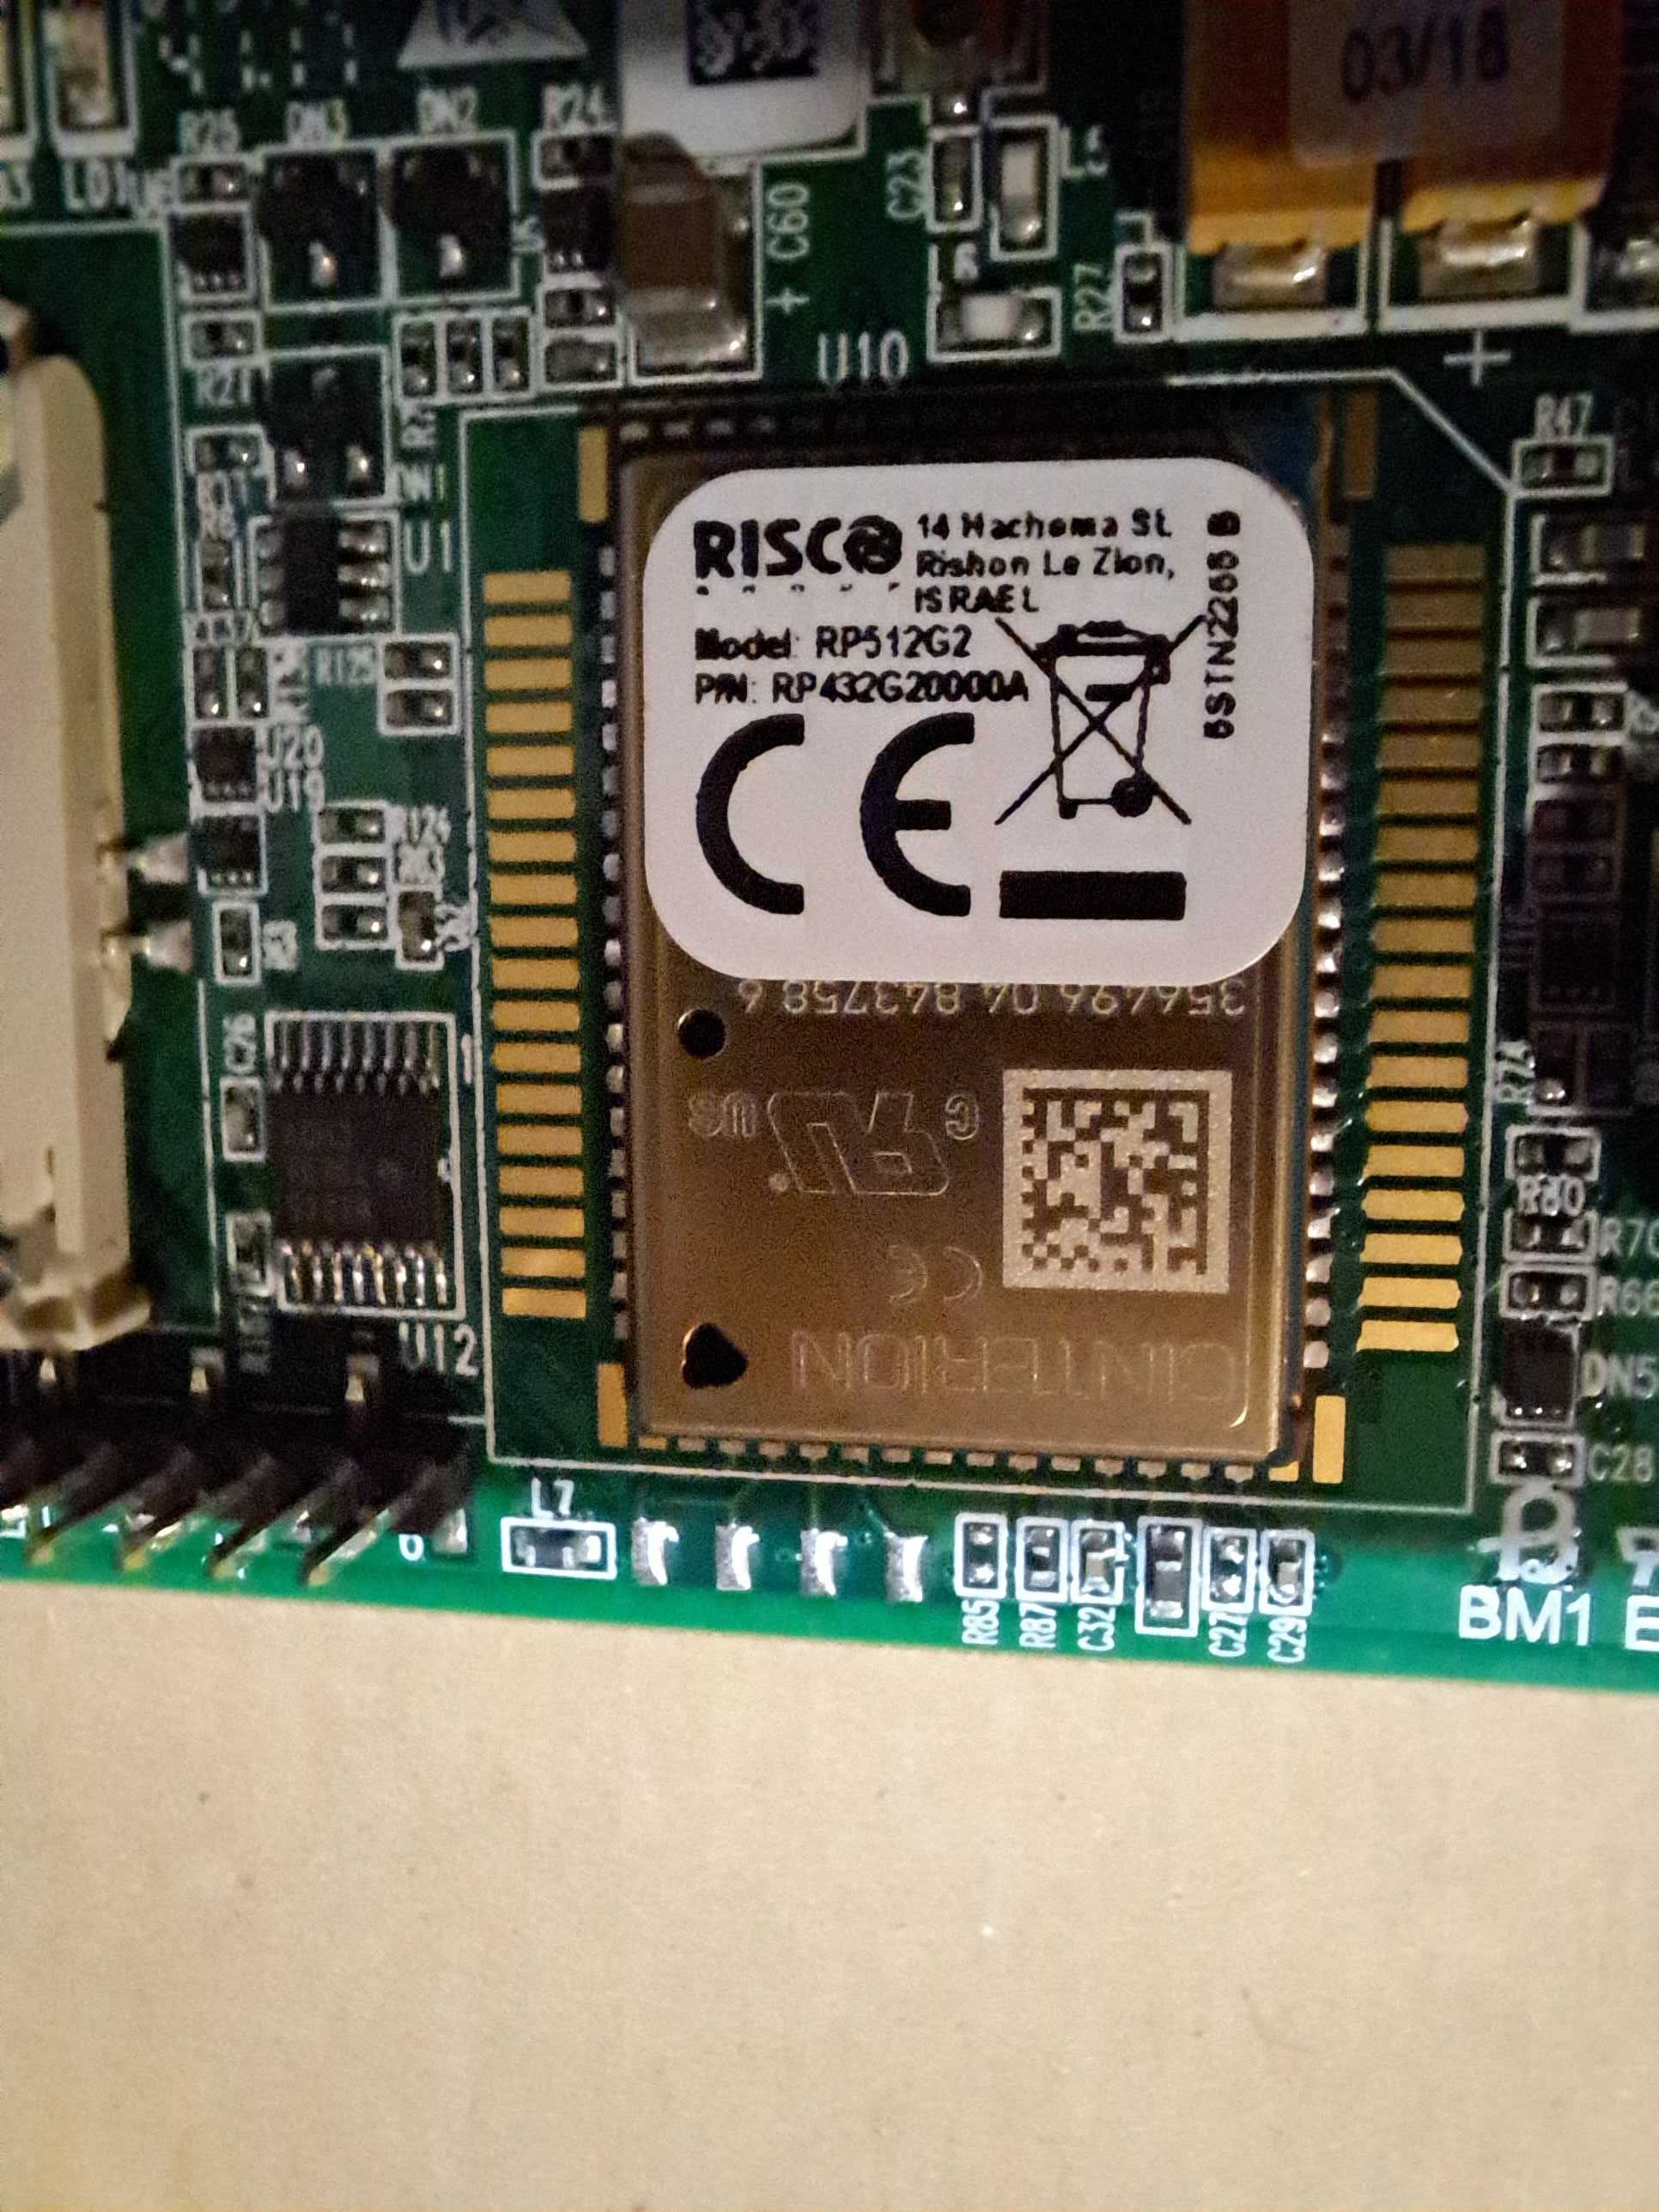 RISCO moduł GSM rp512g2